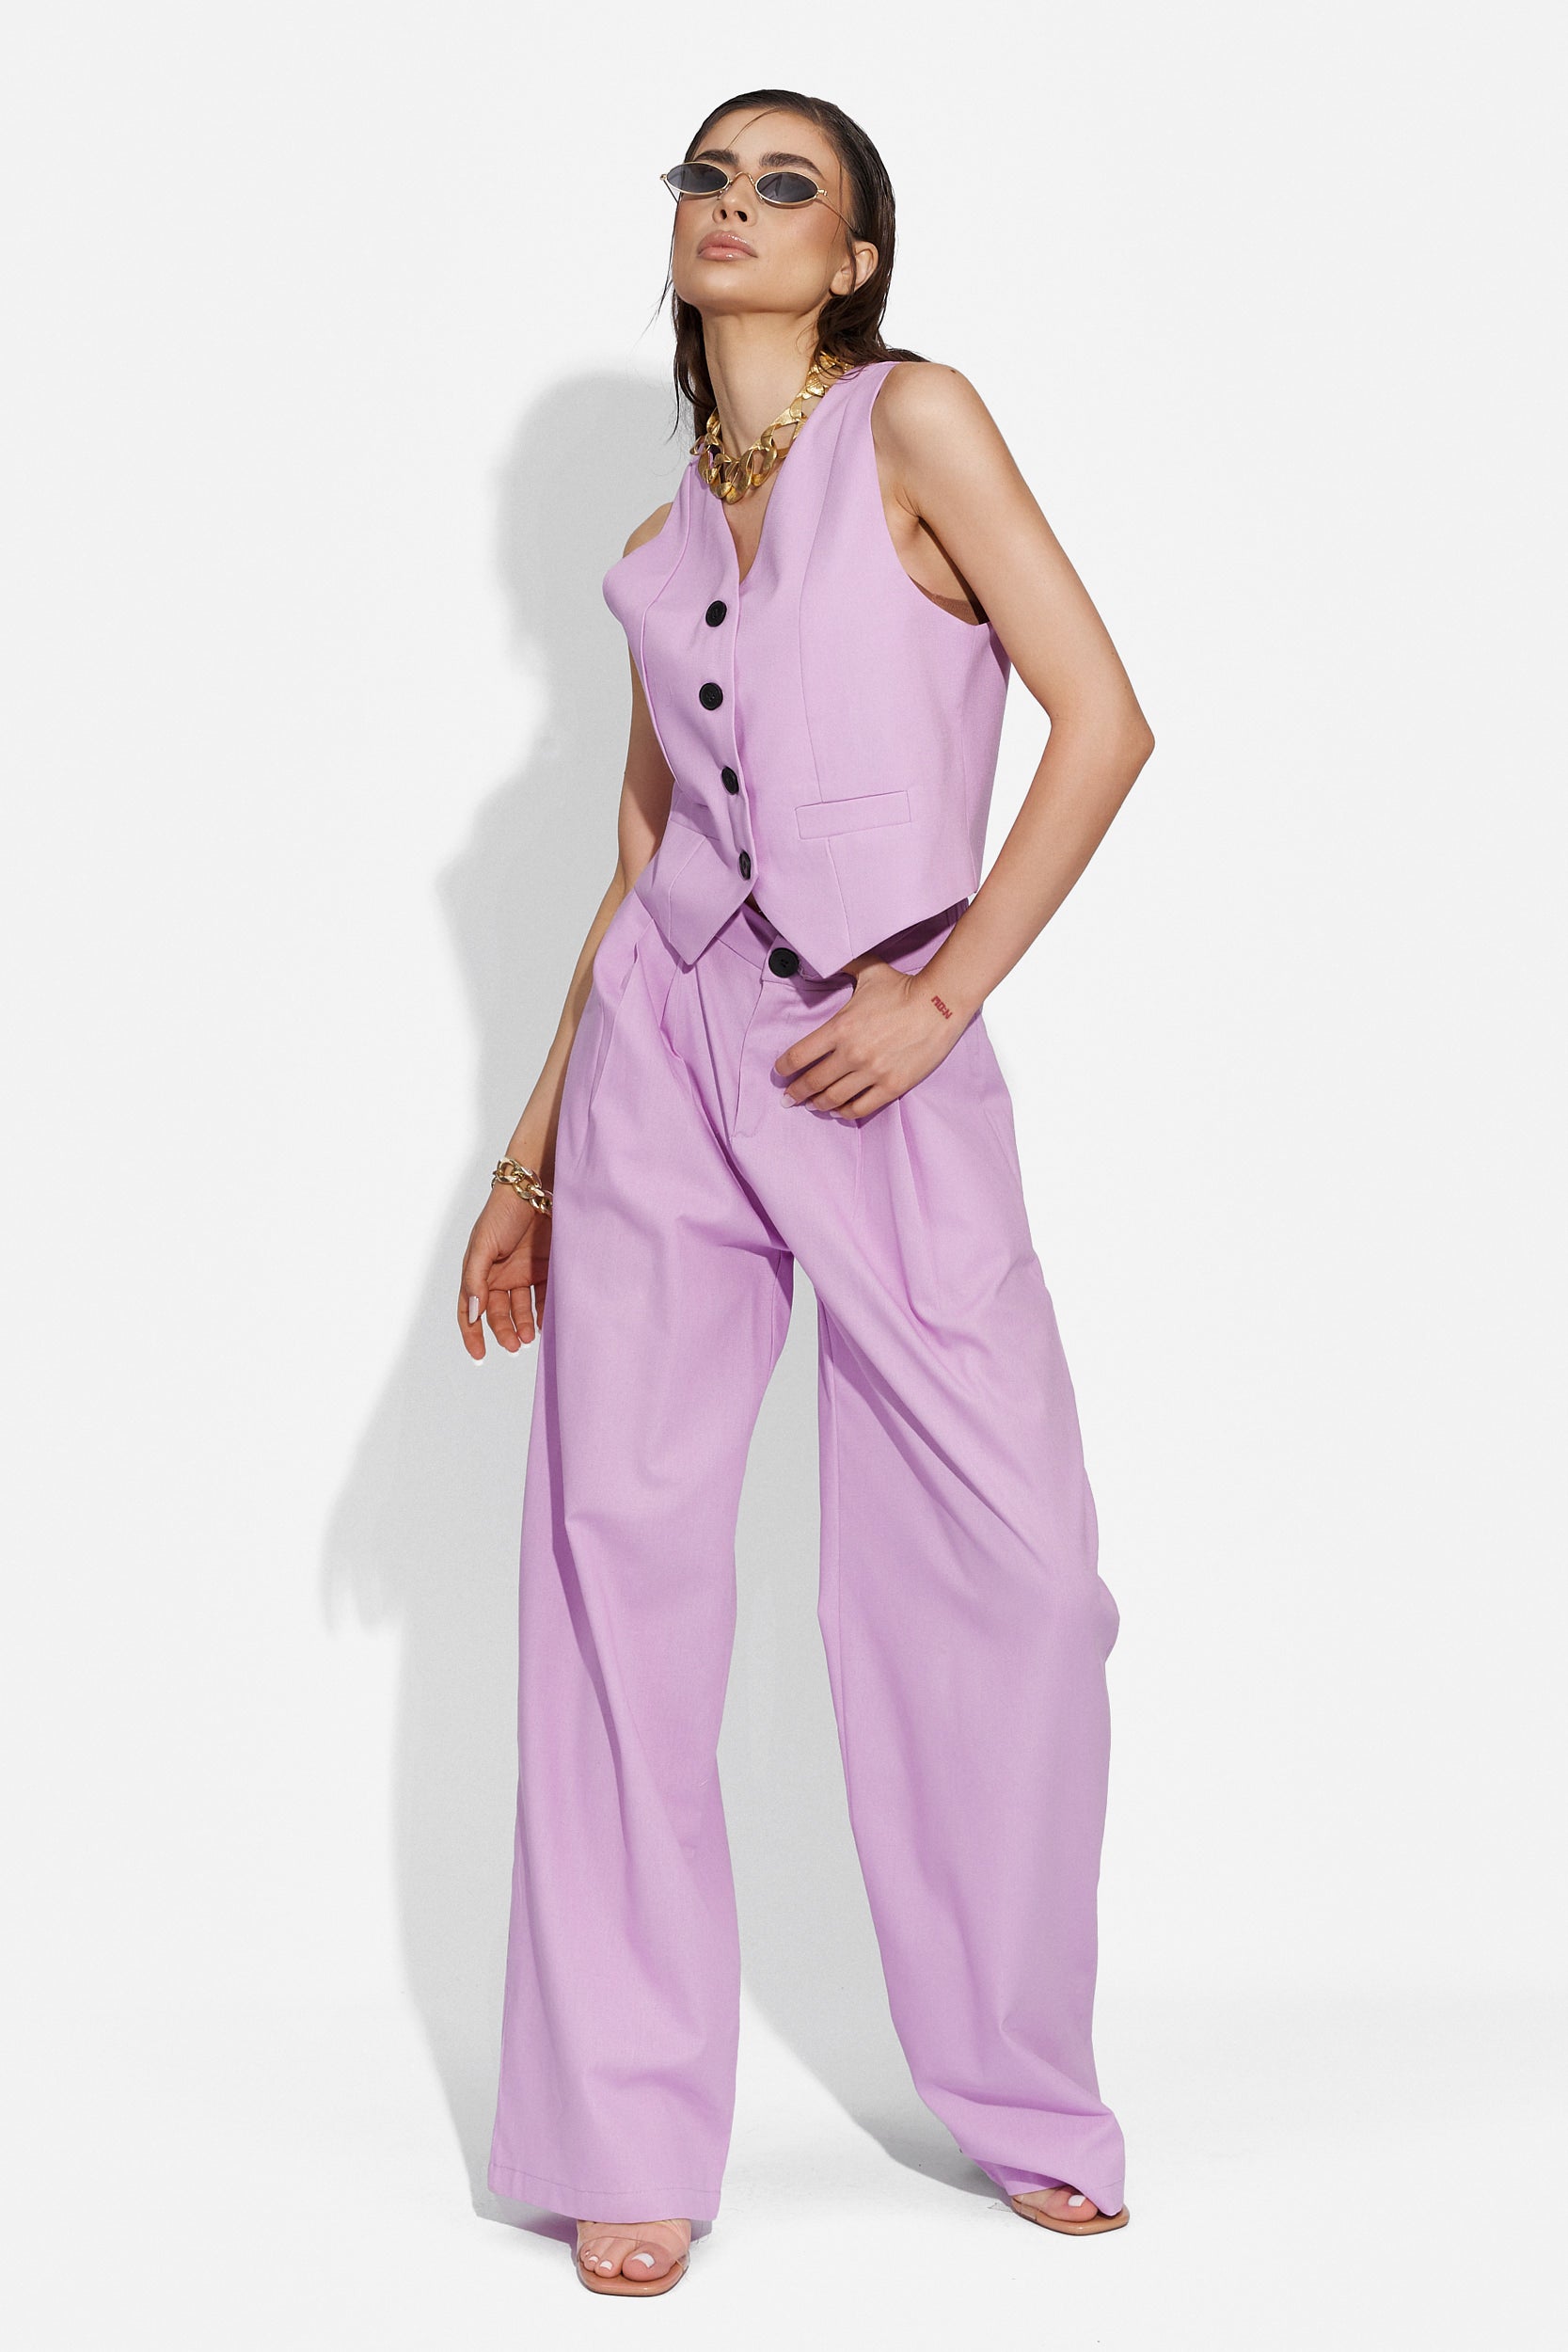 Velasy Bogas purple casual women's trouser suit